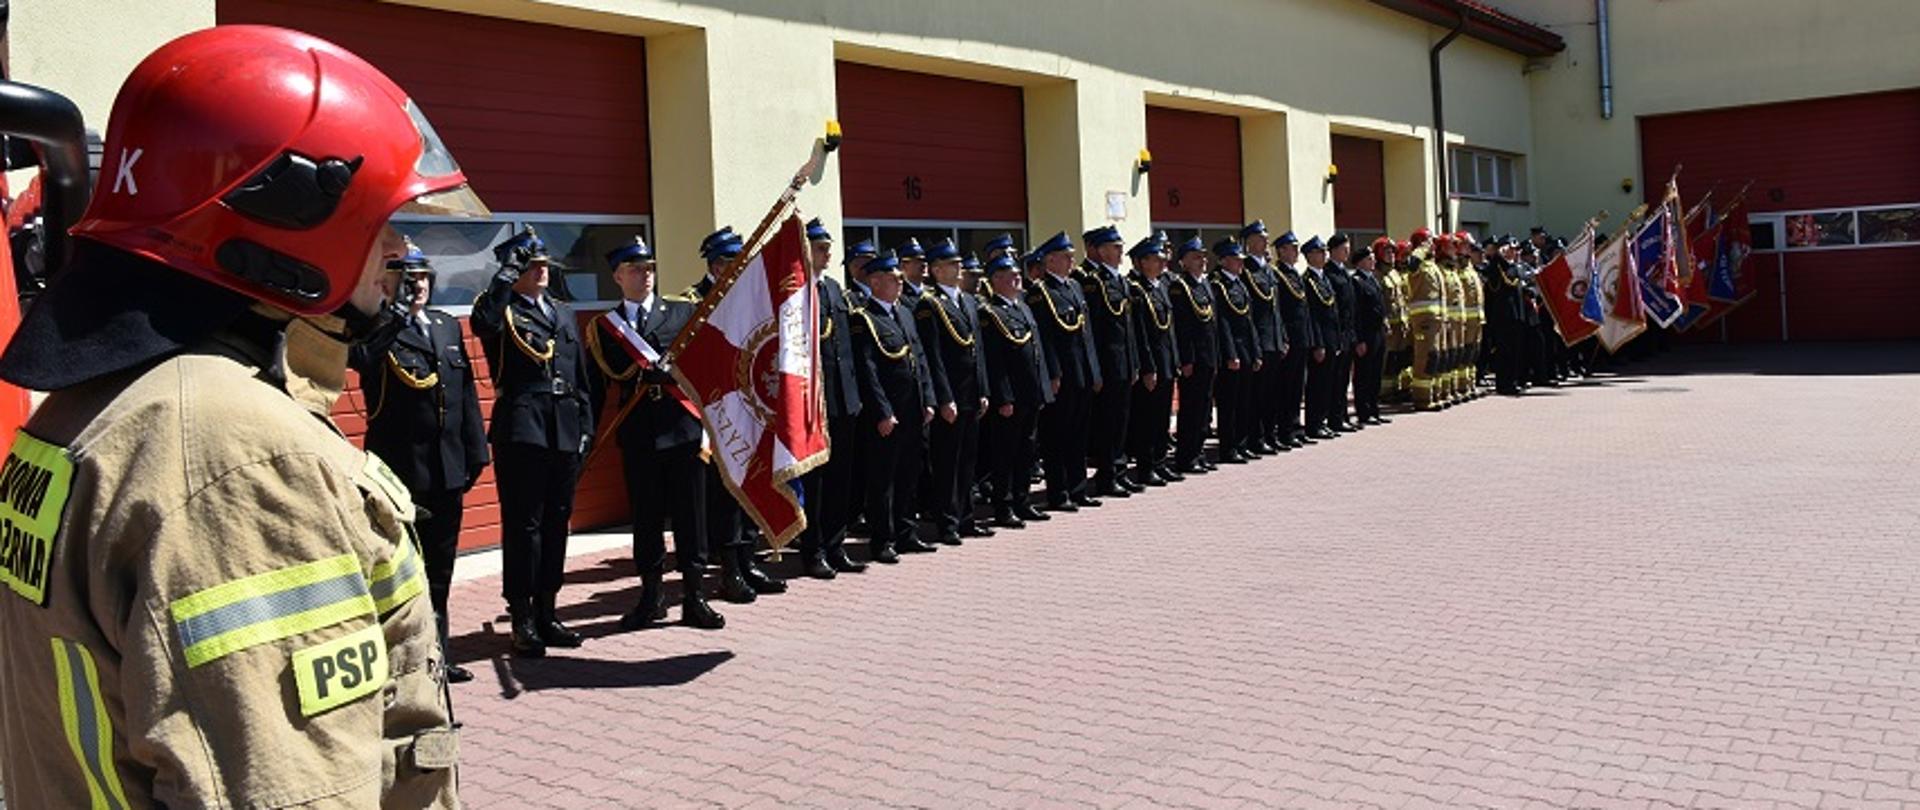 Na zdjęciu widzimy pododdział strażaków z powiatu skarżyskiego podczas podnoszenia flagi państwowej na maszt.